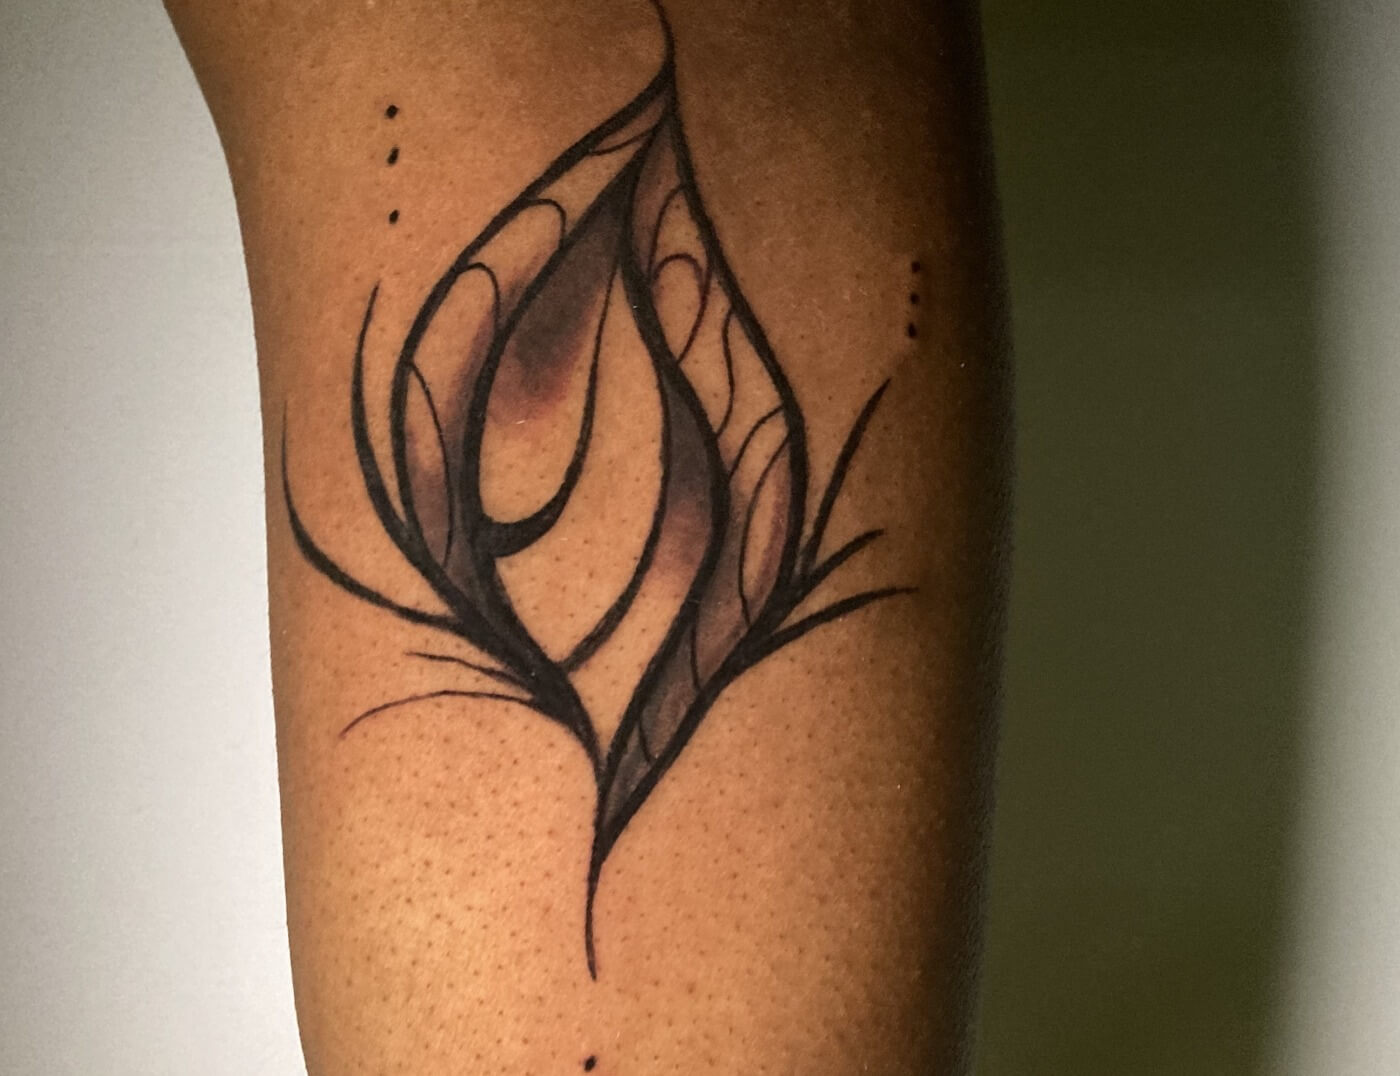 tattoo #tattoos #ink #inked #art #tattooartist #tattooed #tattooart  #tattoolife #love #artist #blackwork #tattooist #tatuagem #tattooing... |  Instagram